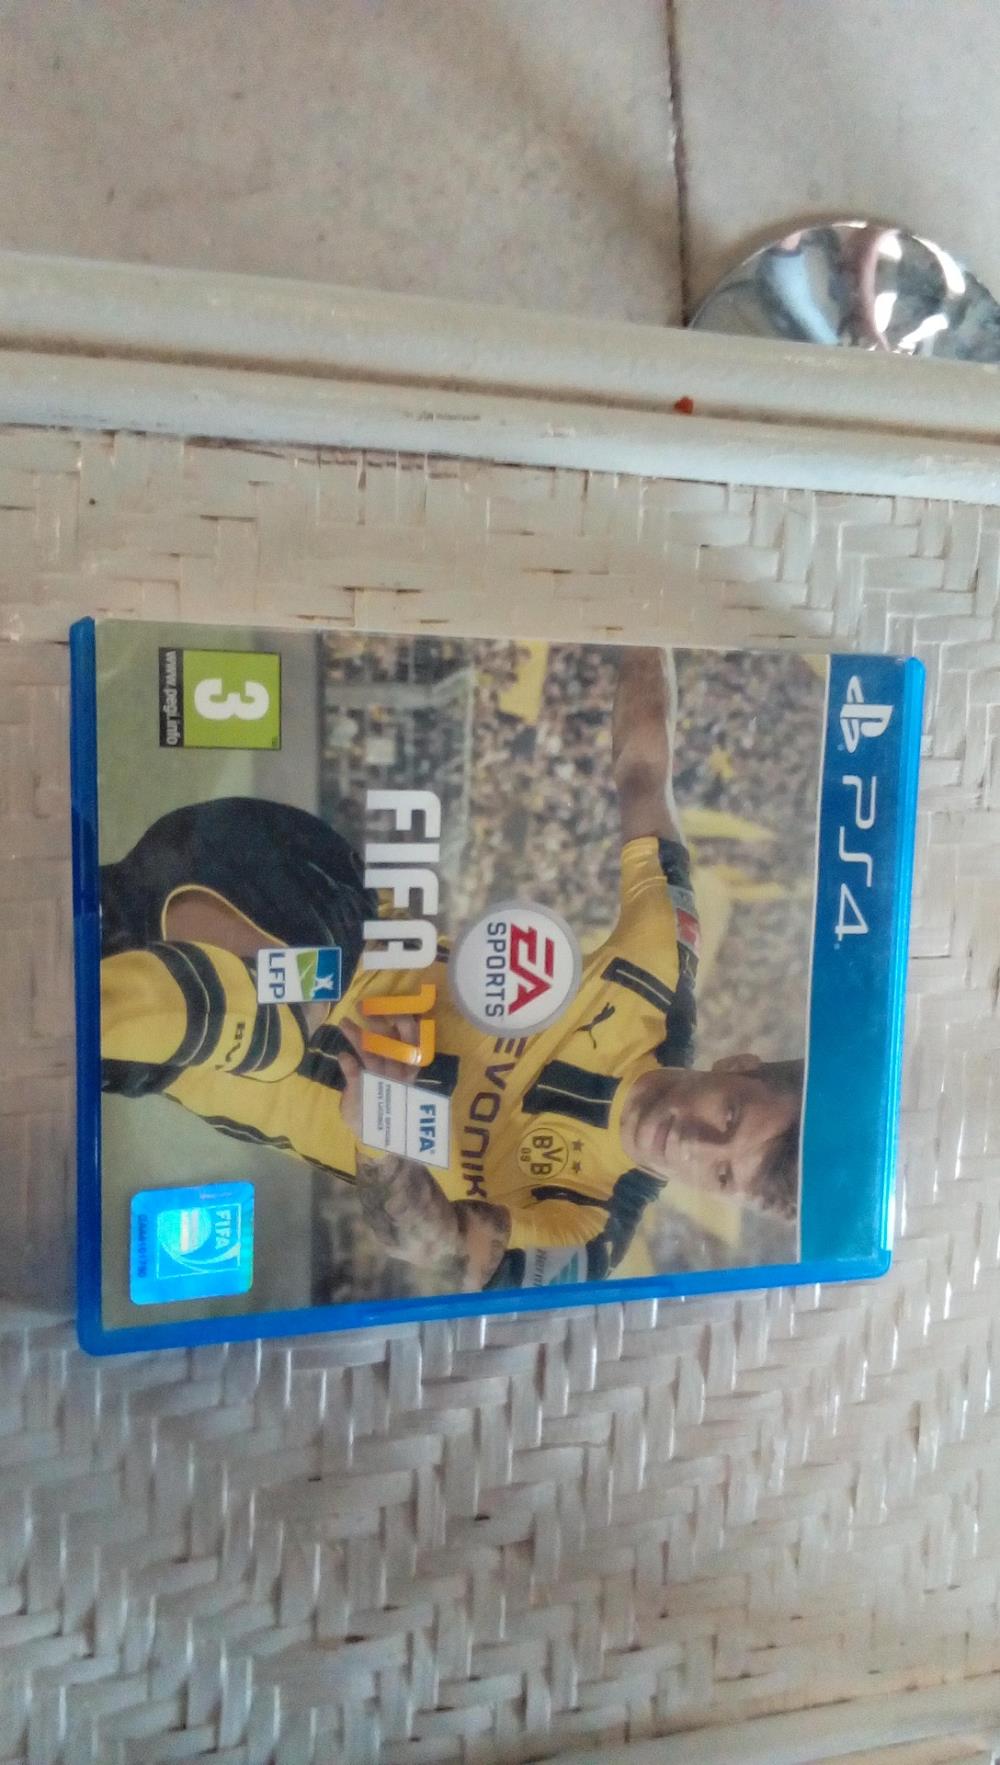 JEU PS4 FIFA 17